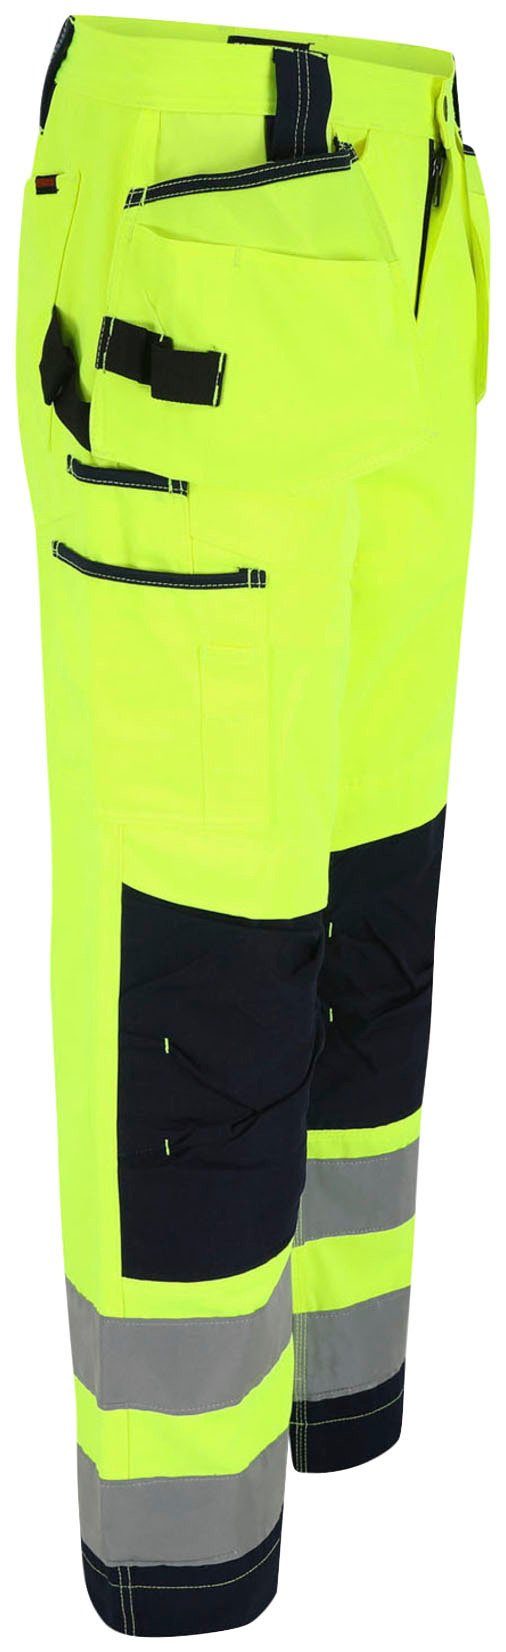 Herock Arbeitshose Styx Warnschutz sehr viele angenehm Hose Nageltaschen, 2 feste Taschen, Wasserabweisend, gelb